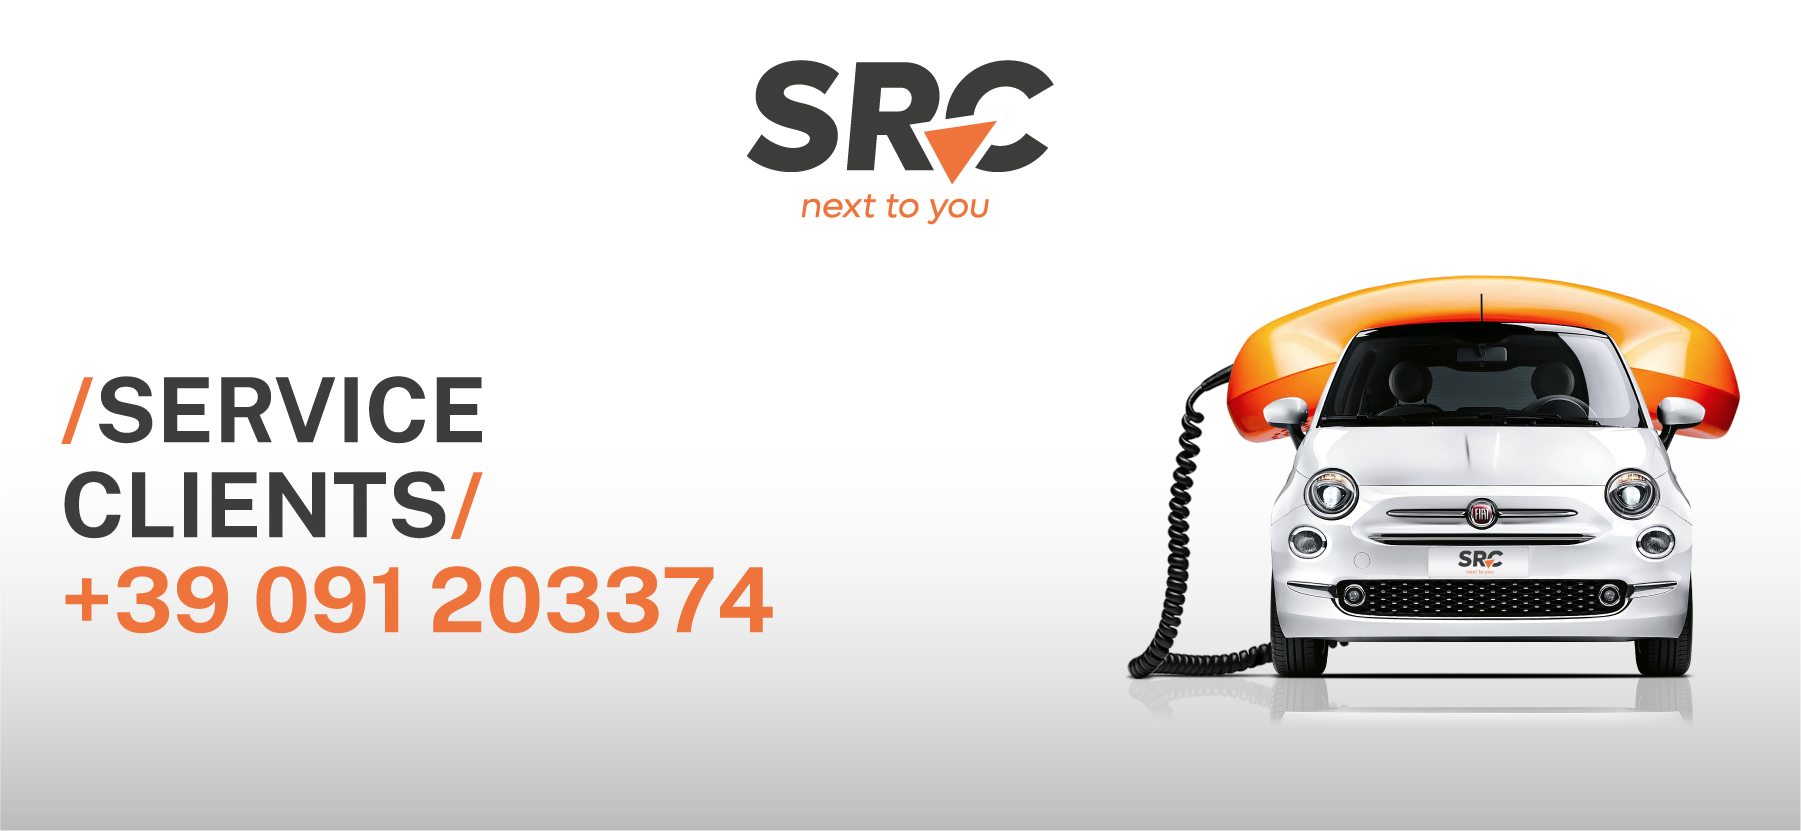 SRC_Service clients